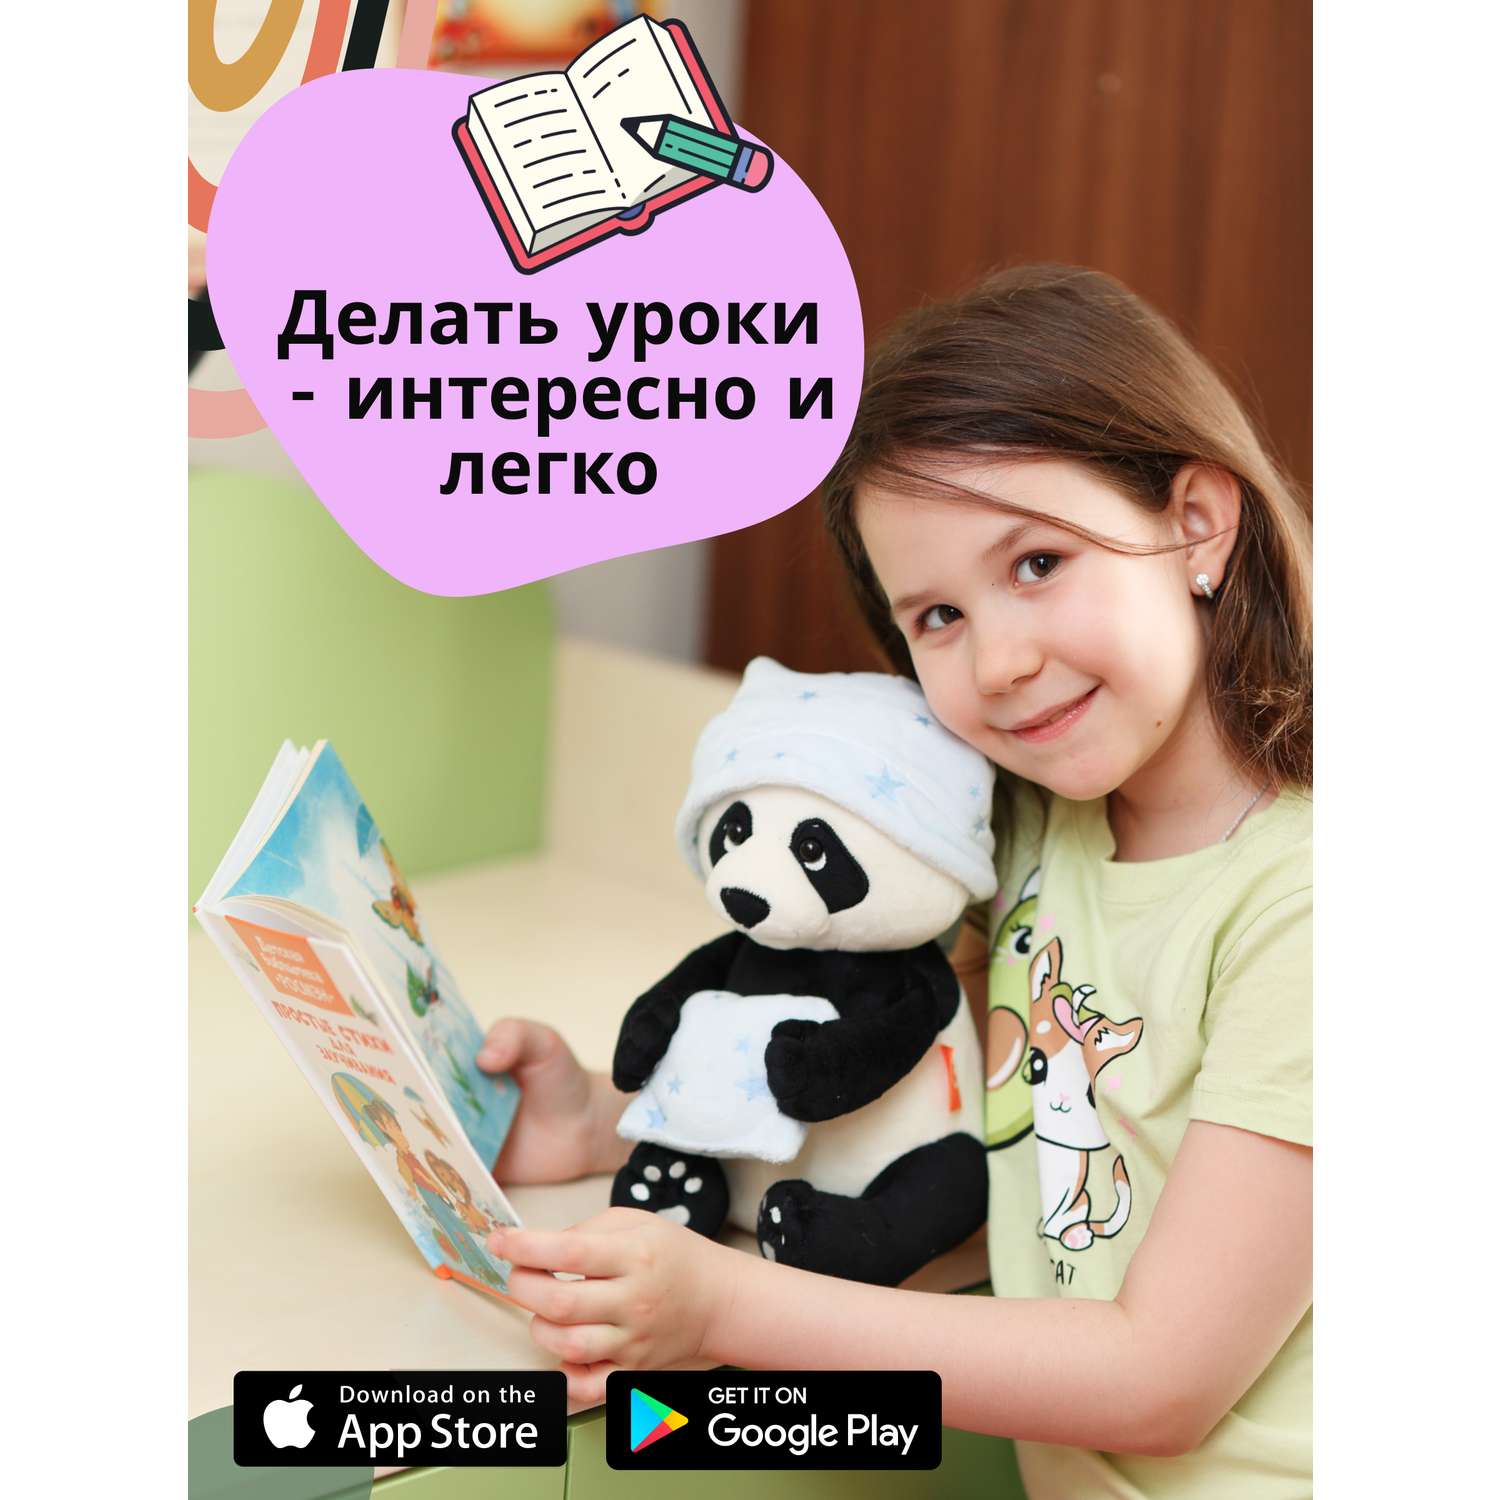 Игрушка развивающая мягкая ДРУГ ЕНОТ интерактивная детская Панда - фото 17